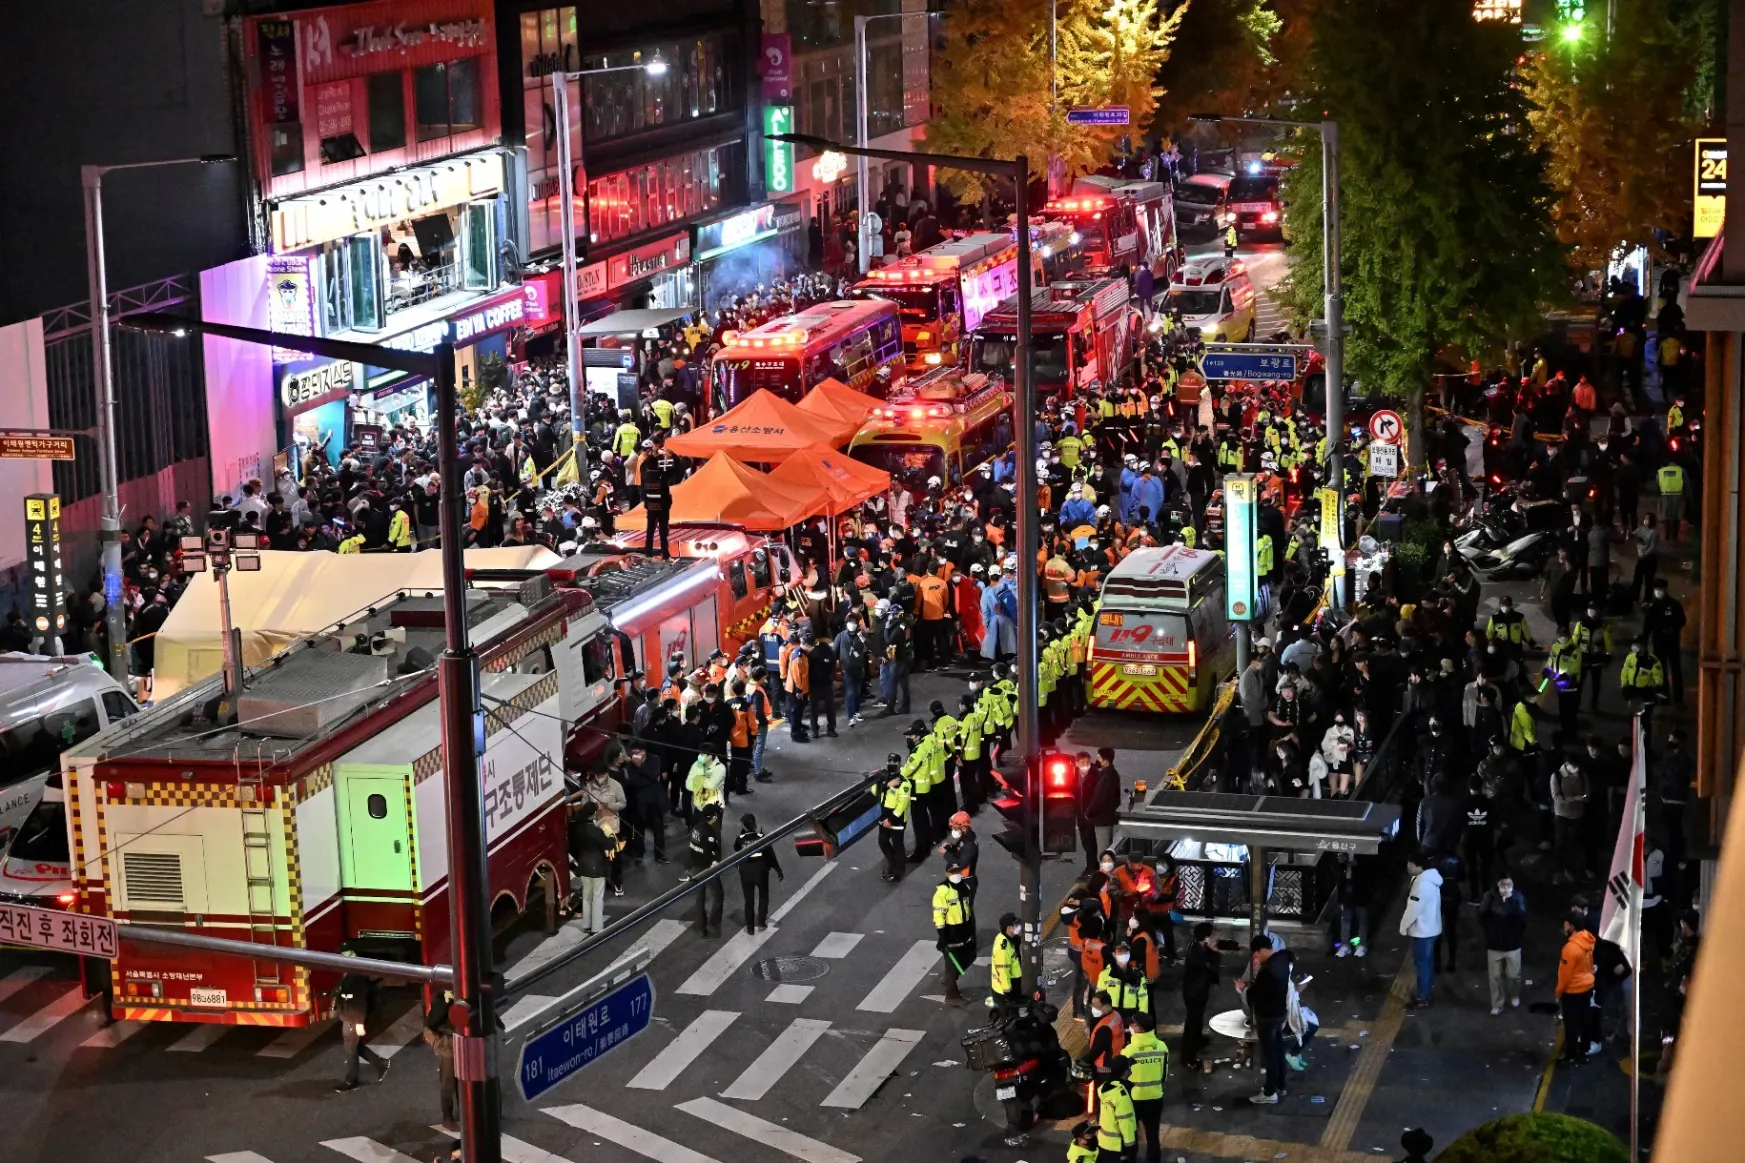 Legalább 154-en meghaltak a halloweeni rendezvényen kialakult tumultusban Szöulban